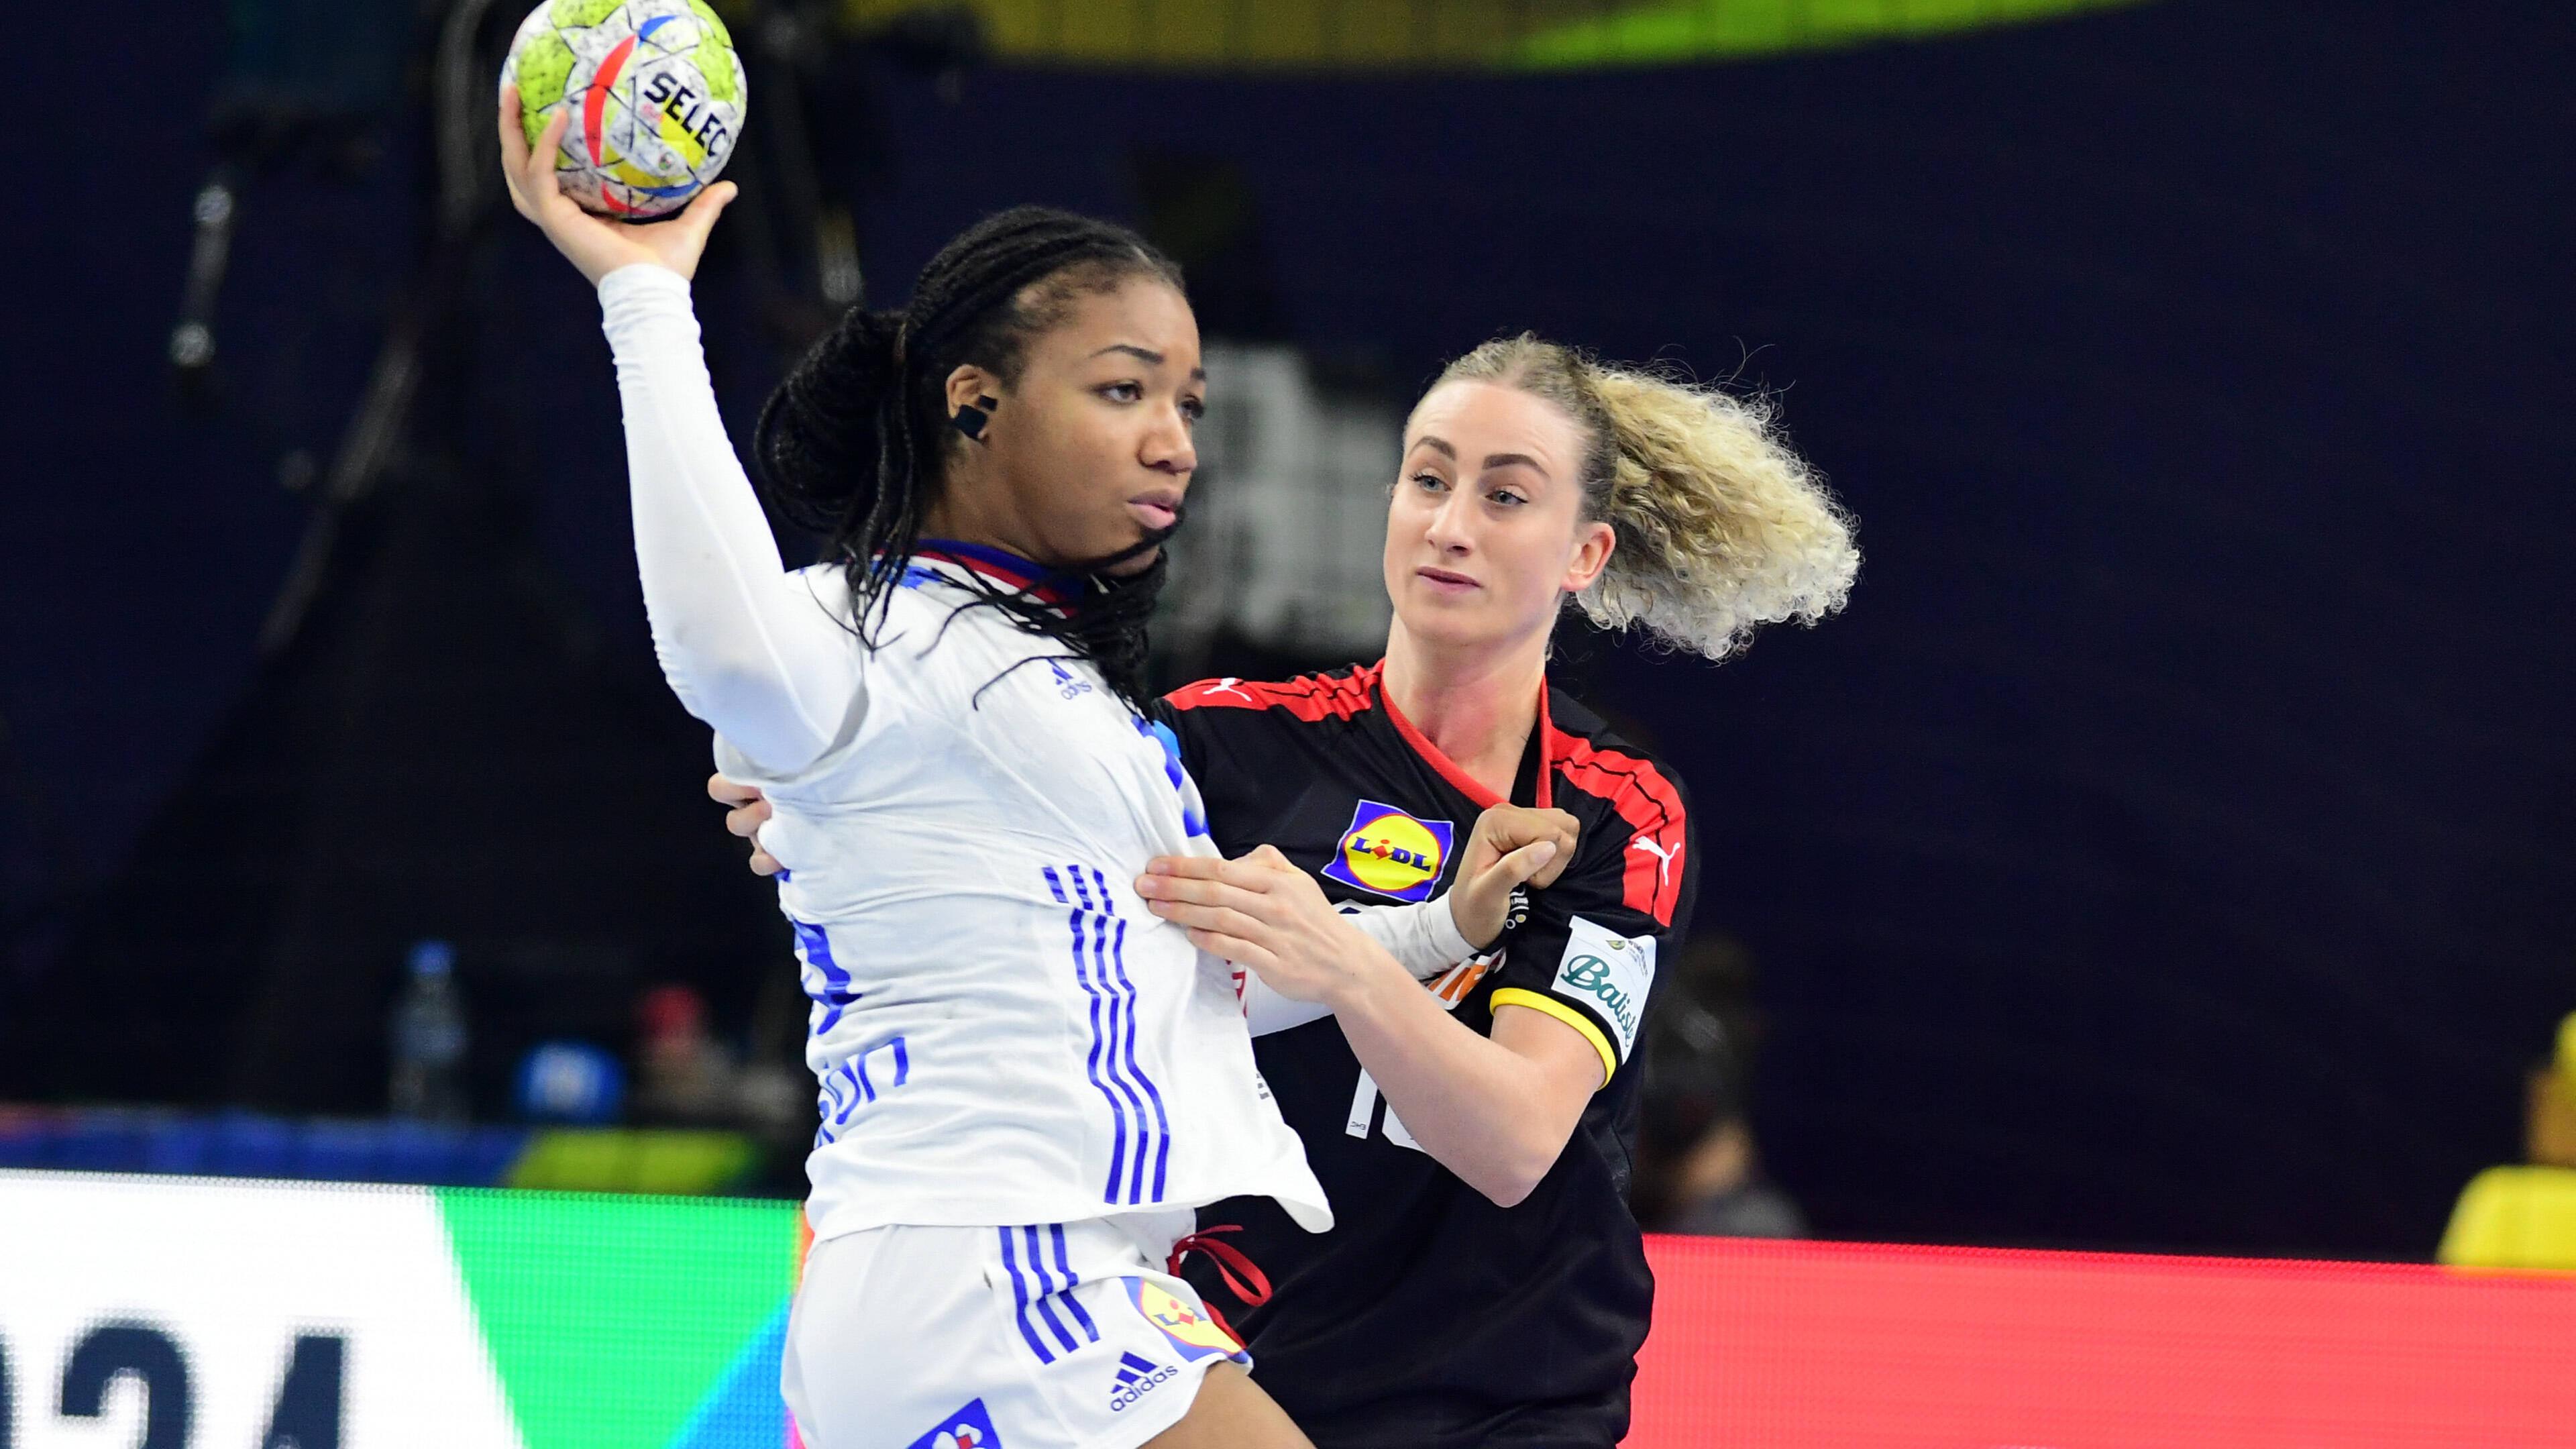 Turnierauftakt der Handball-Frauen - eine WM, zwei Ziele